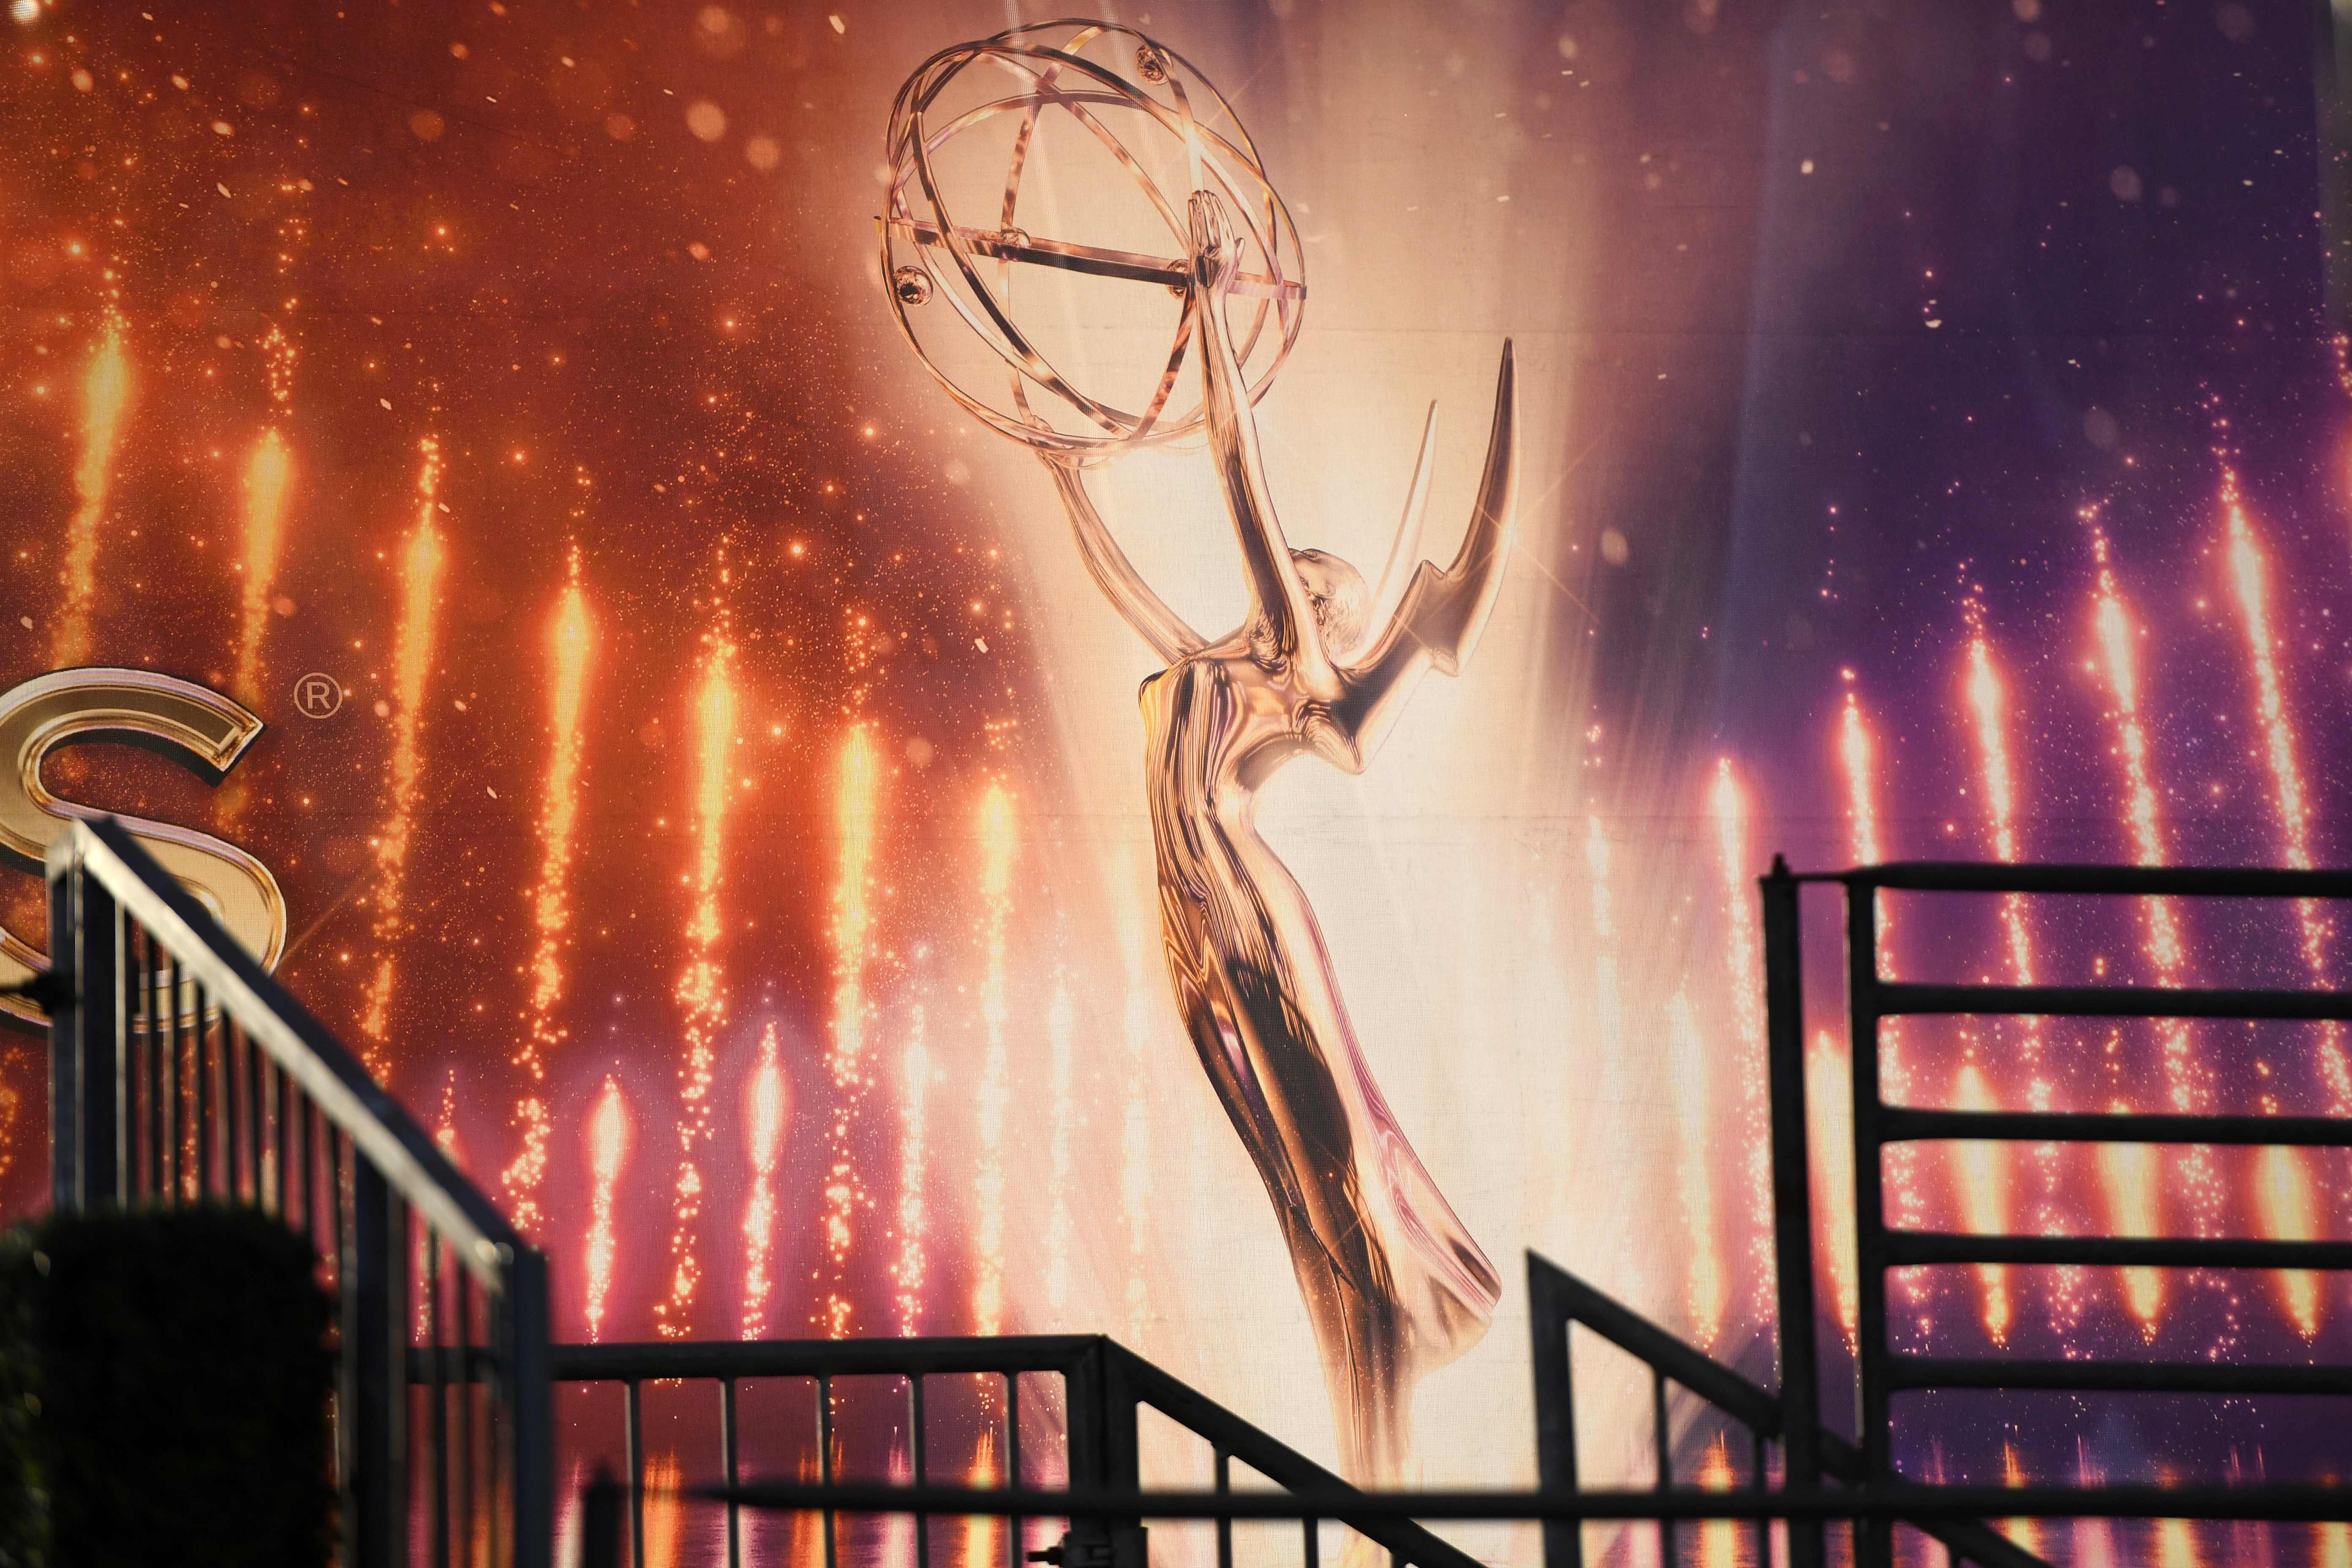 Los premios Emmy, considerados los Óscar de la televisión. Foto Prensa Libre: AFP)